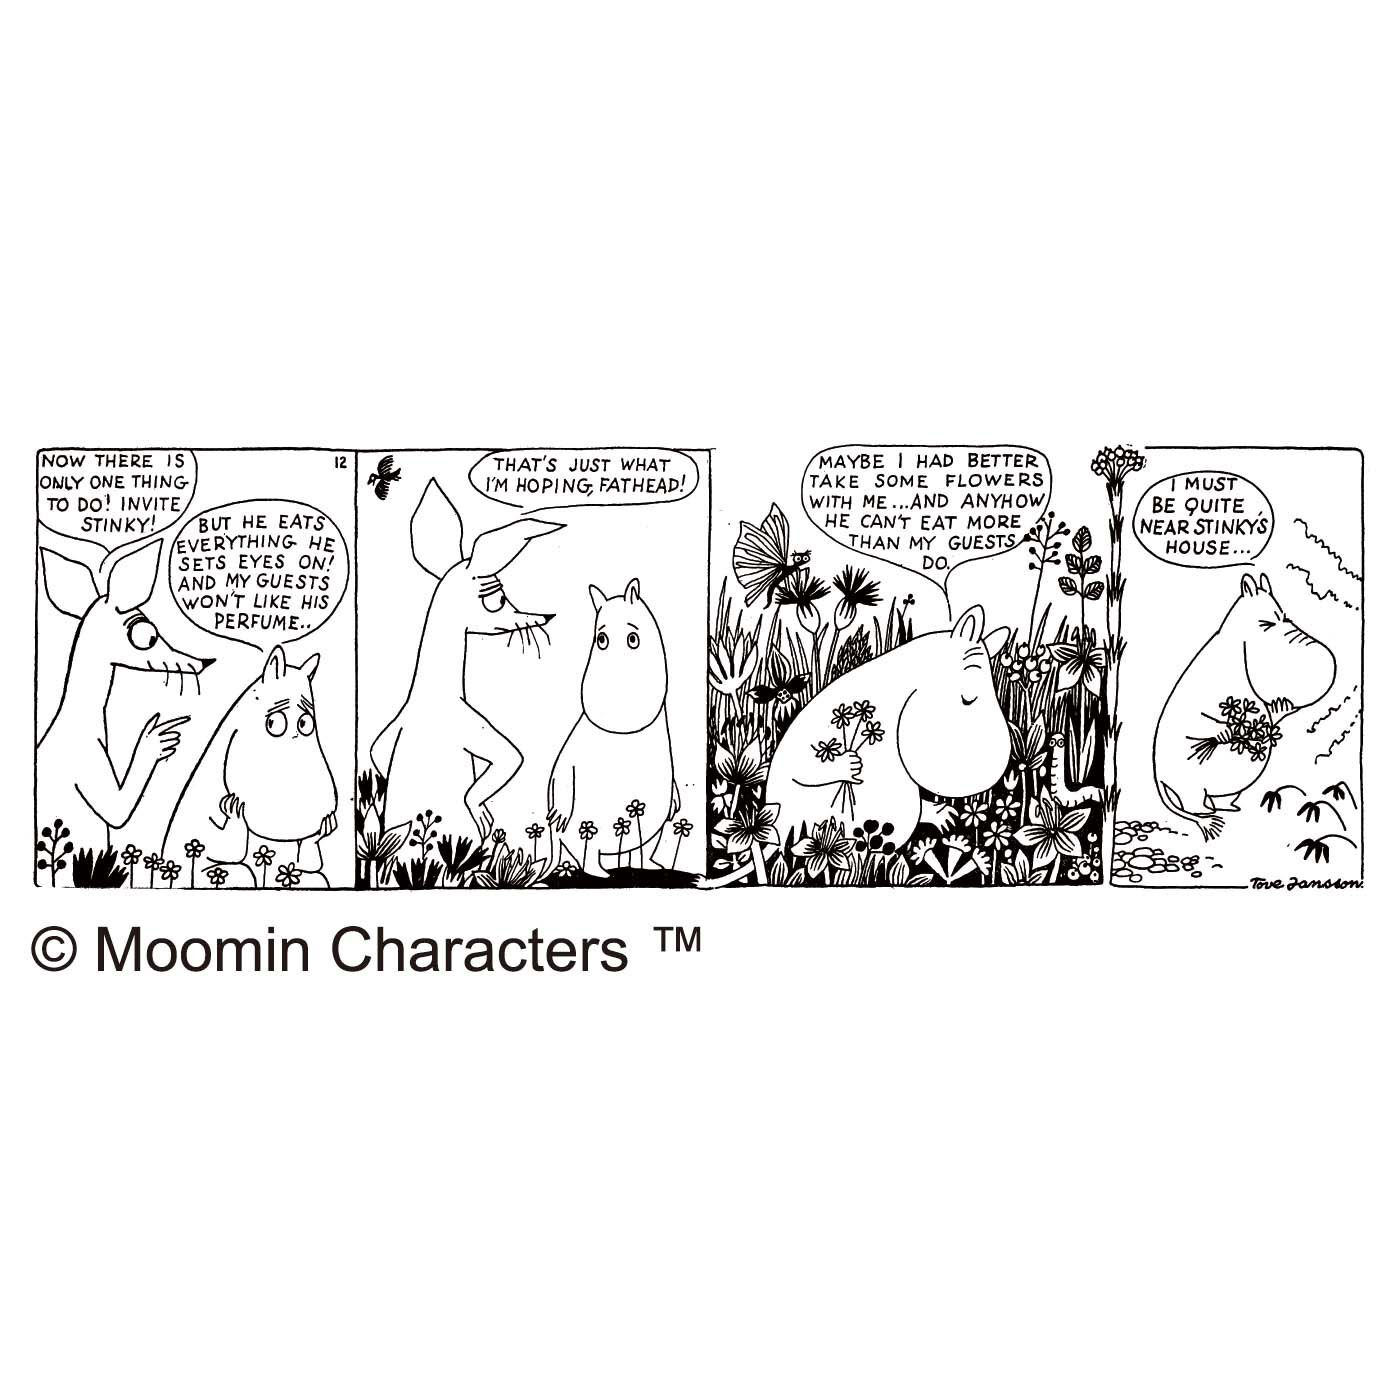 クチュリエ|ムーミン谷の季節をめぐる ちくちく刺し子の大判風呂敷（花）|コミックからいろいろなシーンを集めたオリジナルデザイン。